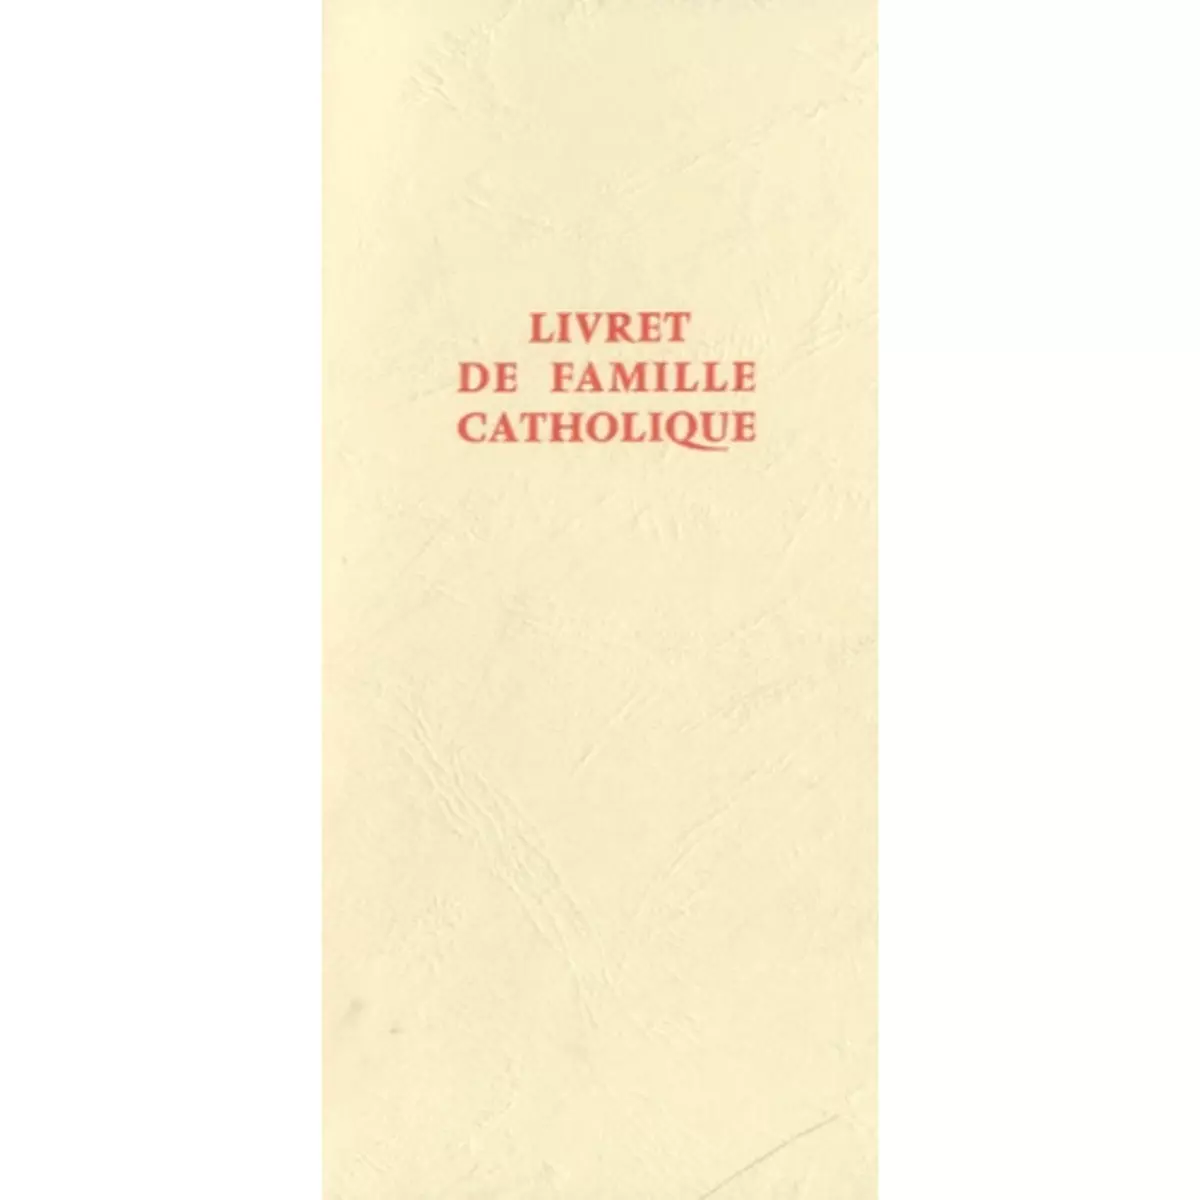  LIVRET DE FAMILLE CATHOLIQUE, Paroi-Services